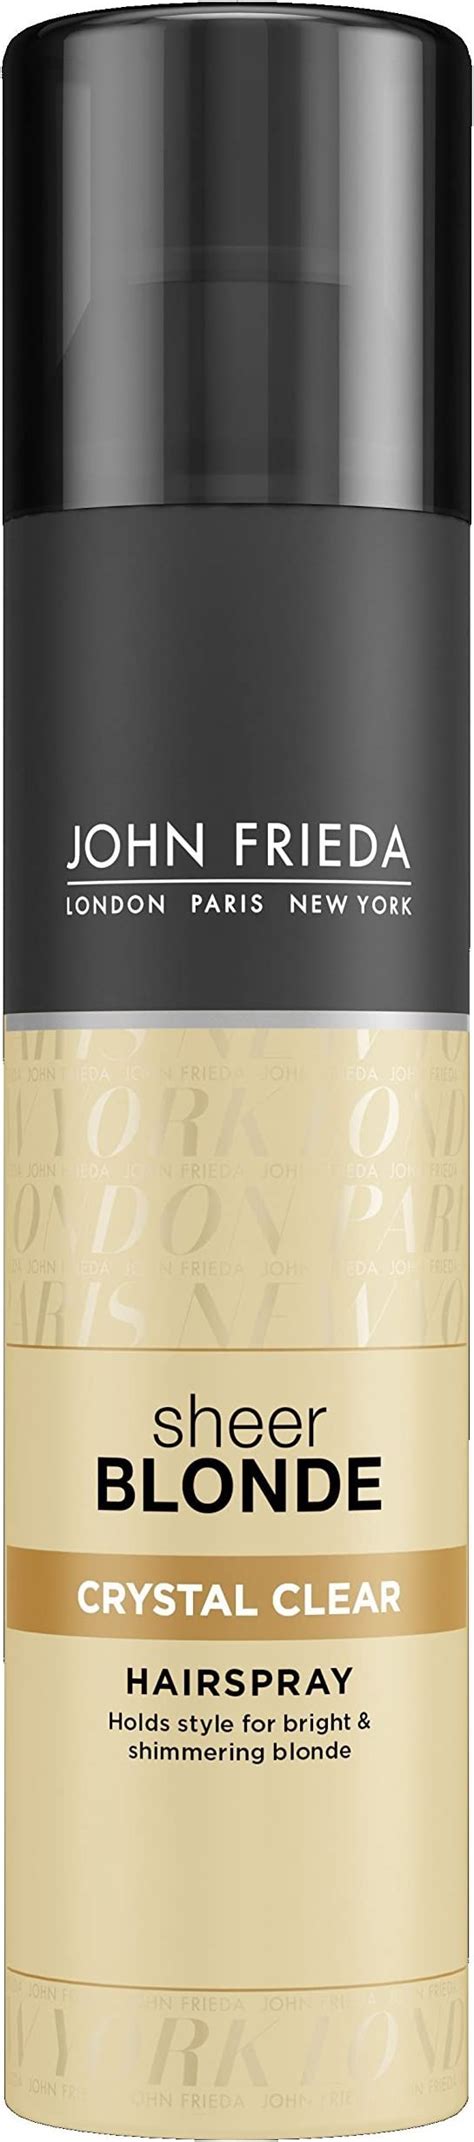 John Frieda Sheer Blonde Crystal Clear Hairspray Hairspray For Blonde